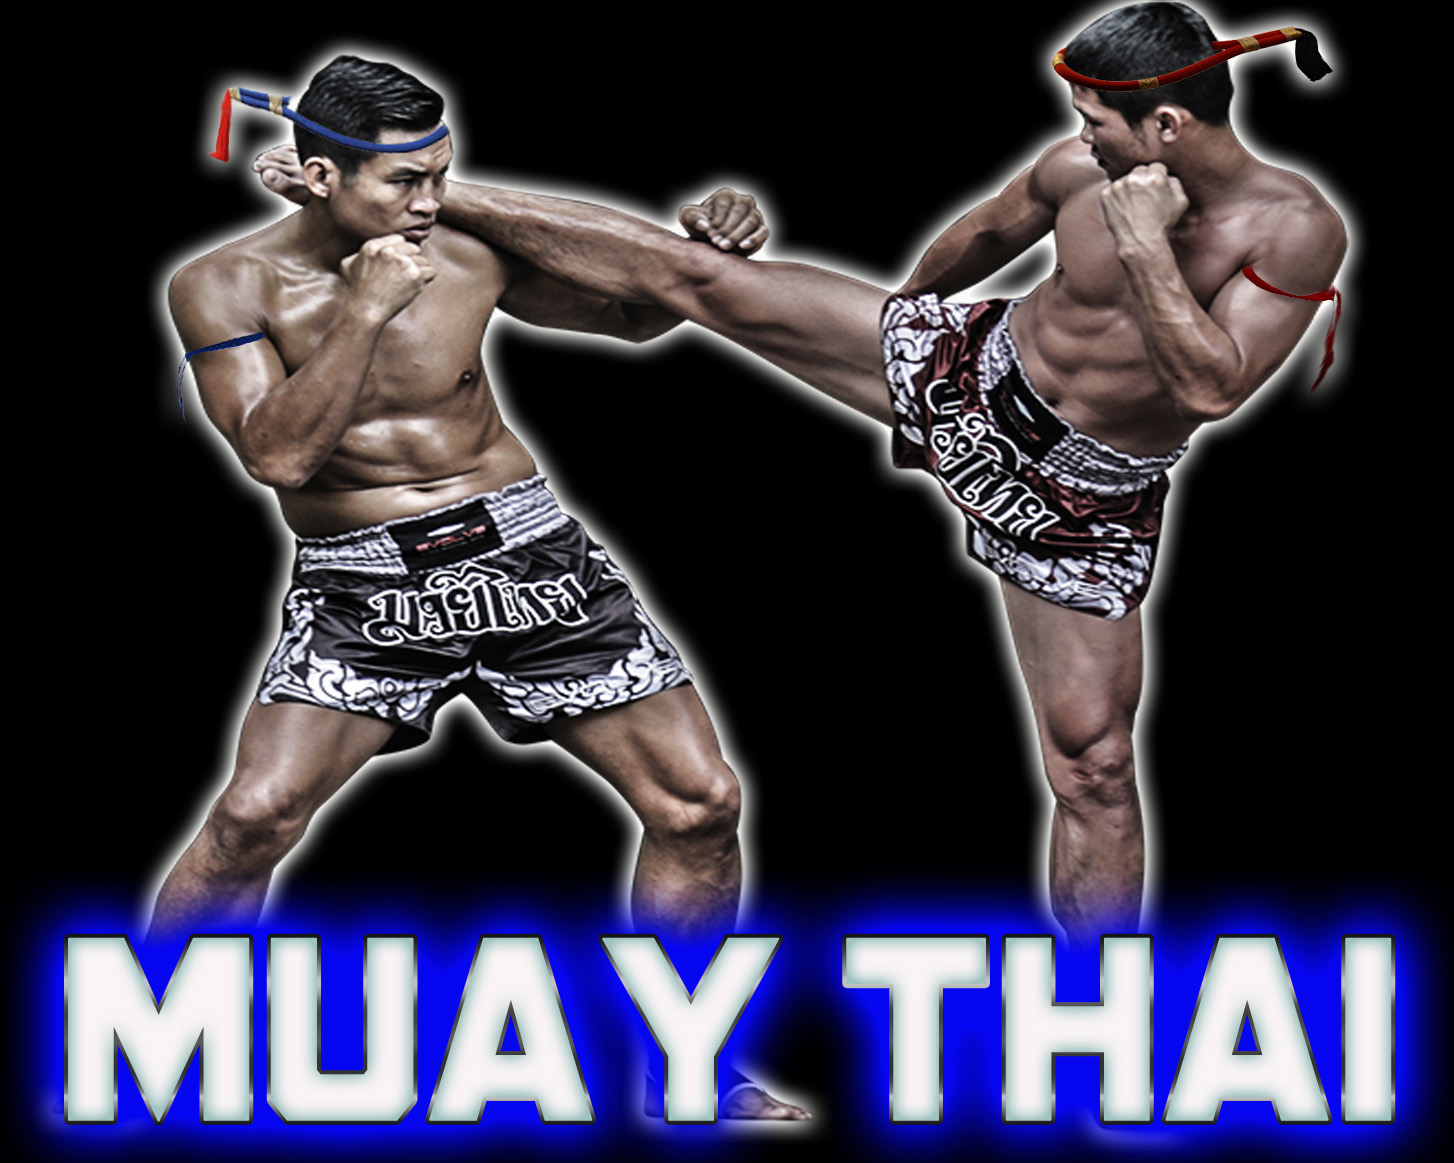 Palestra Combattimento Casilina - Palestra Muay Thai a Palestra Combattimento Casilina